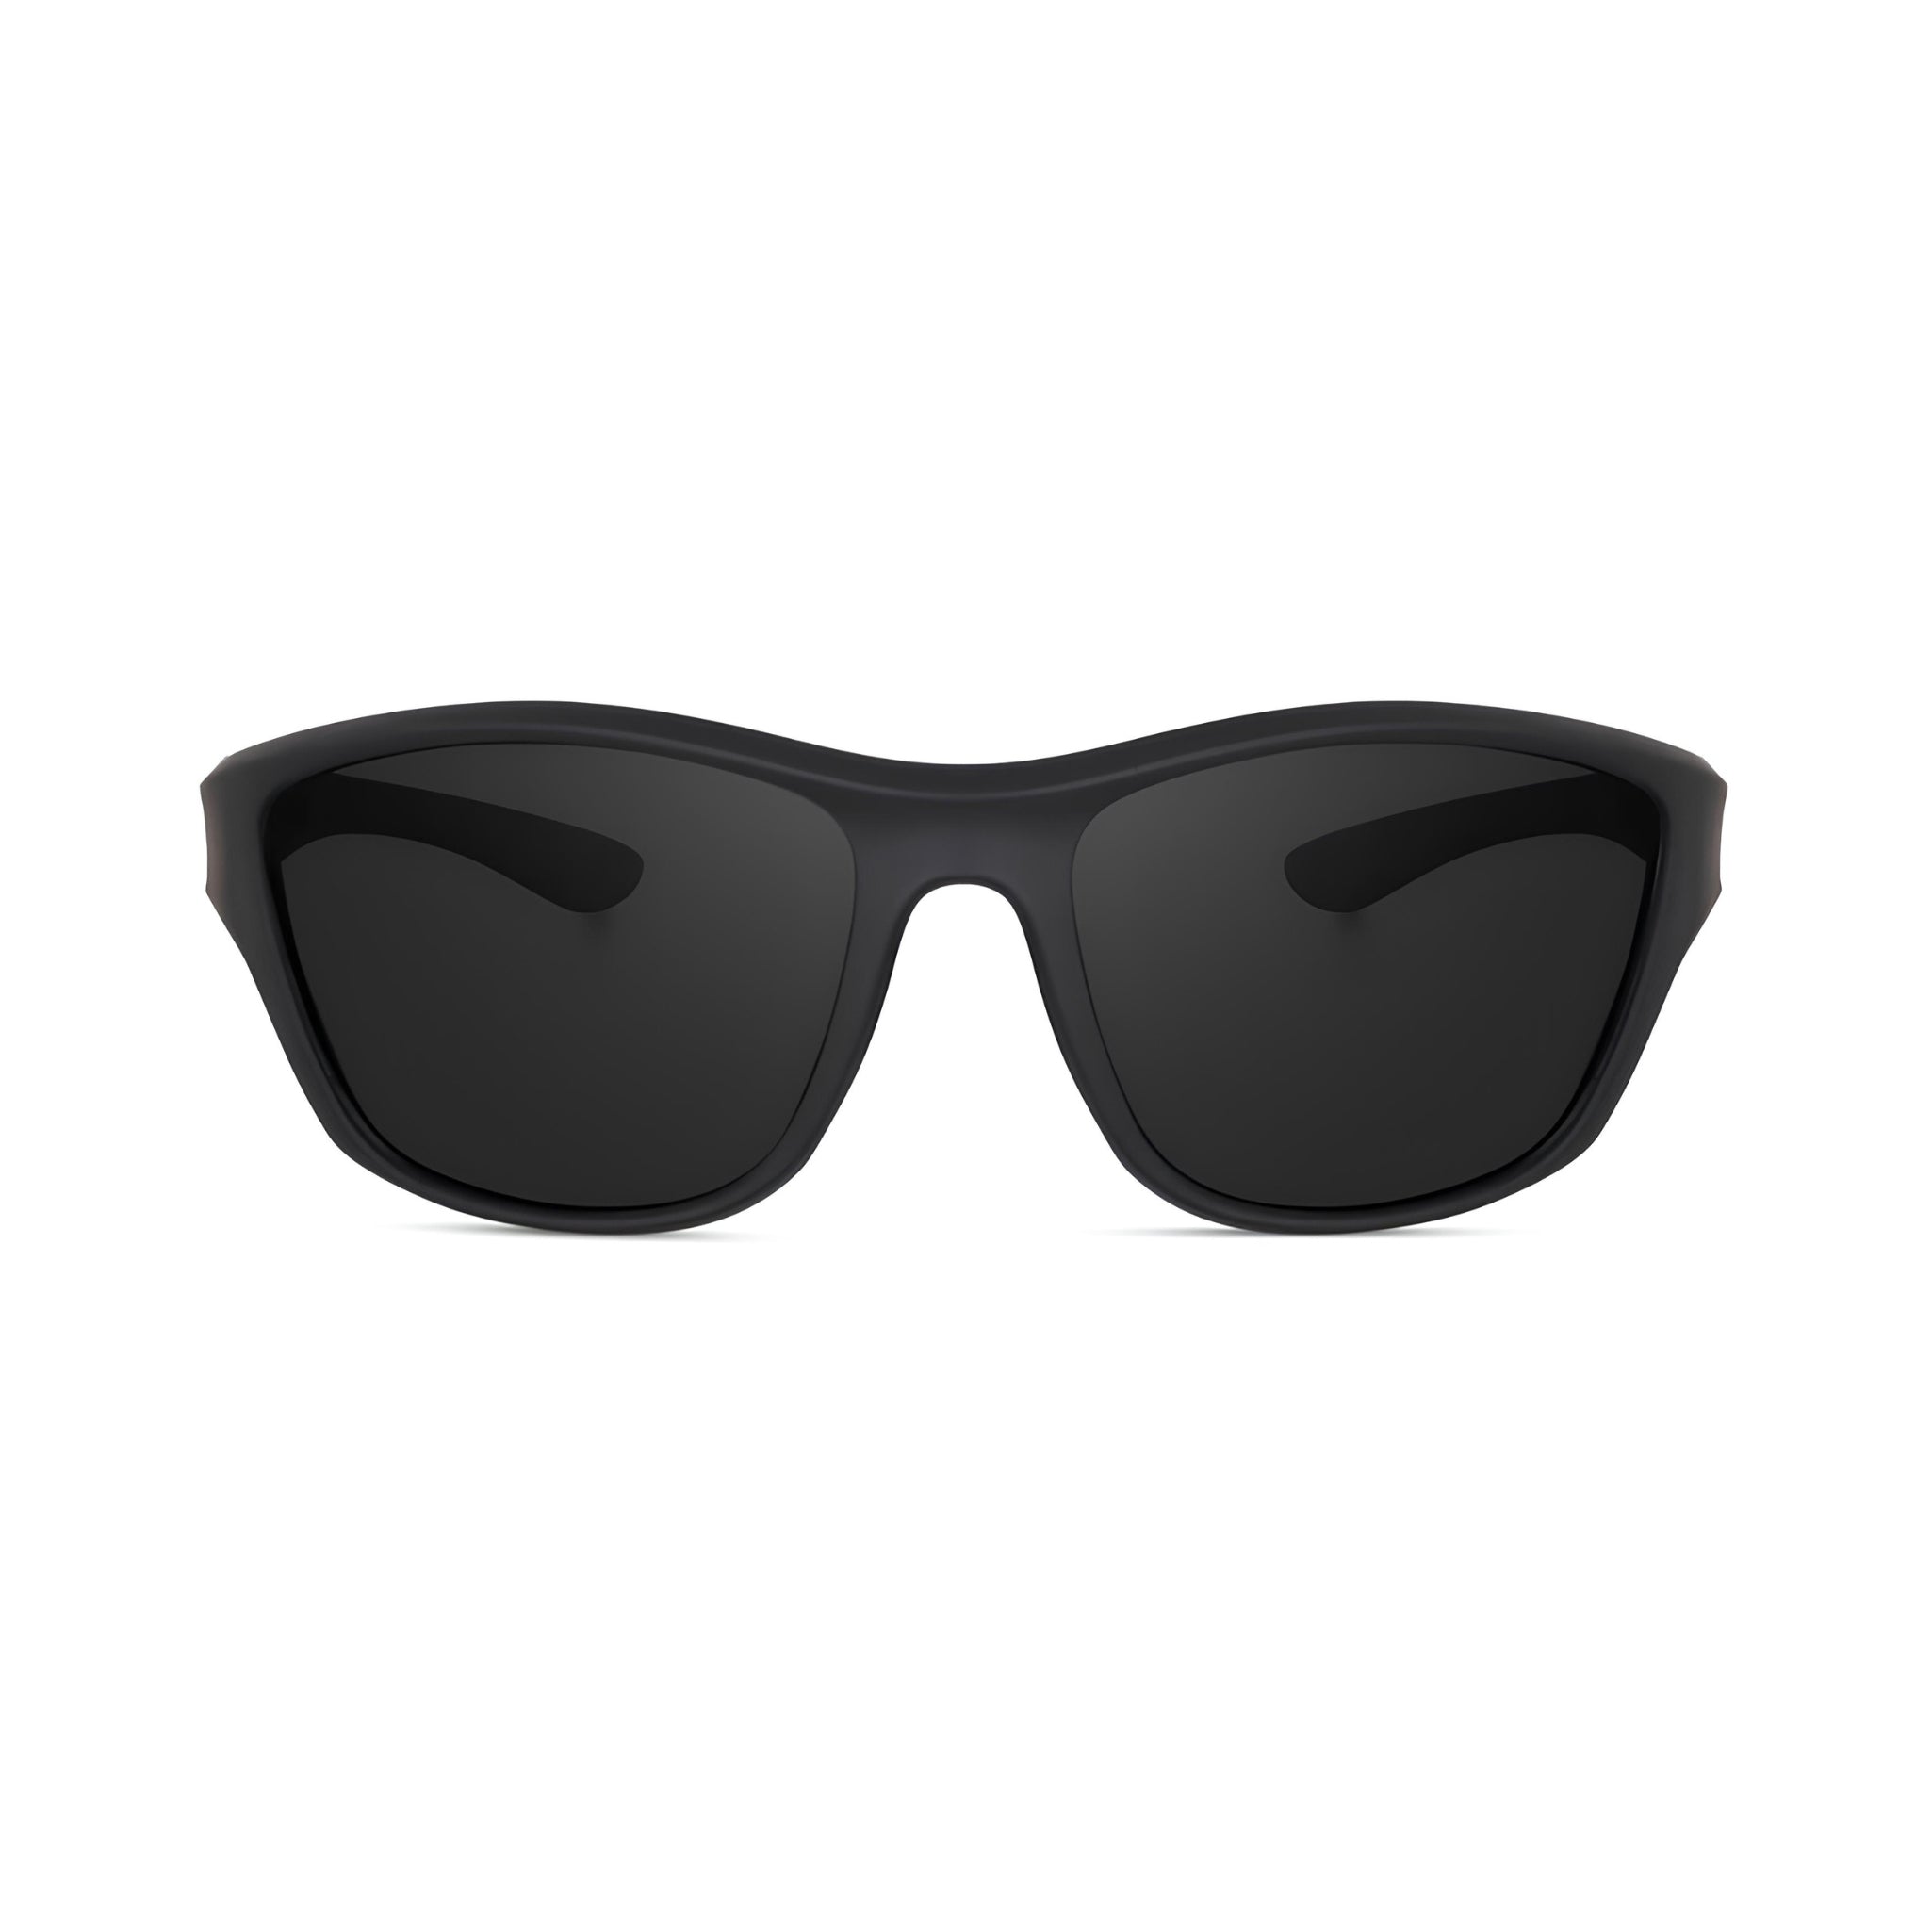 Xplorer Series Polarized Sports Sunglasses - Black